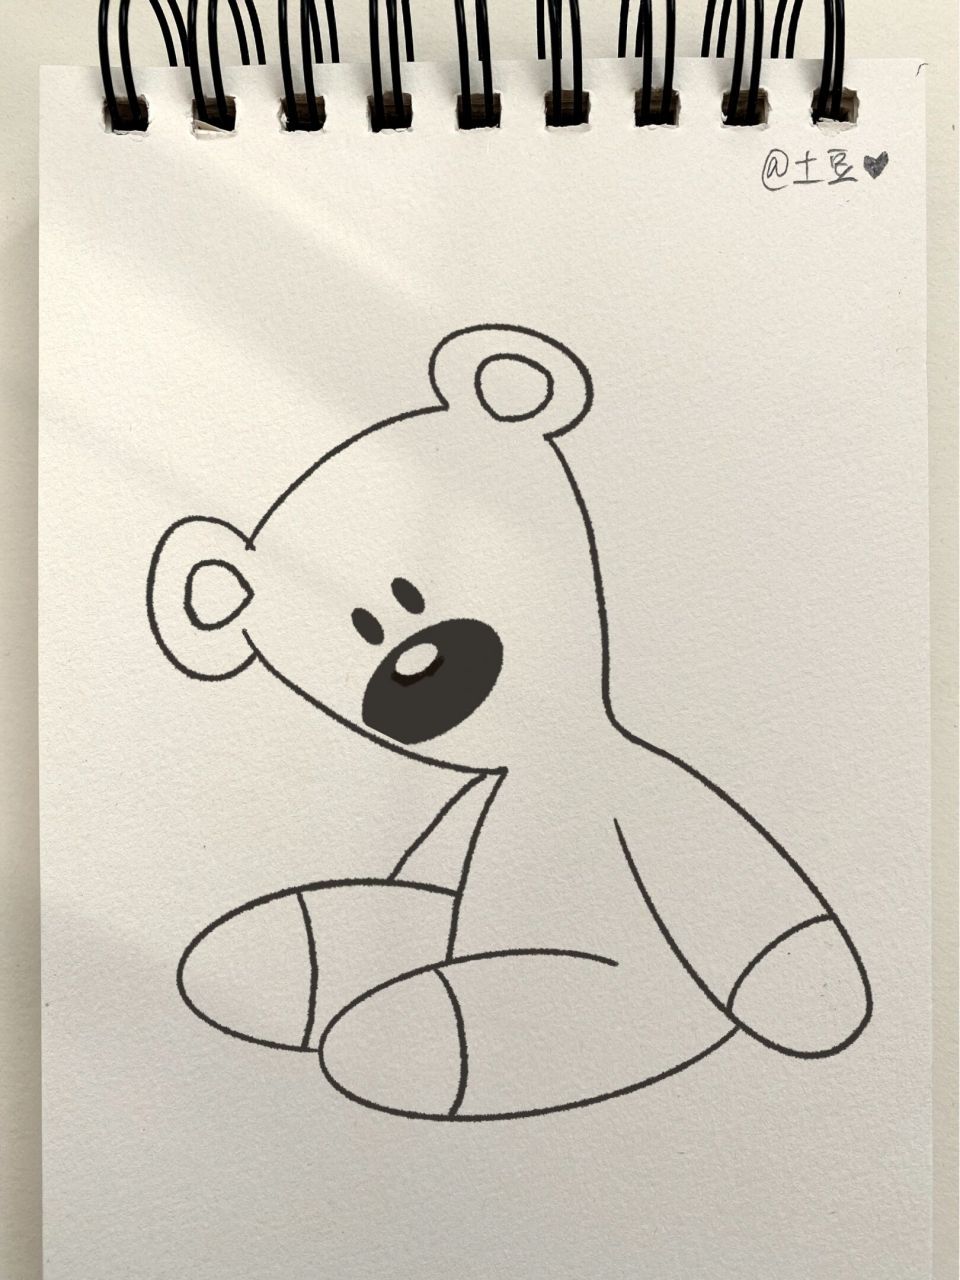 卡通玩具熊简笔画图片